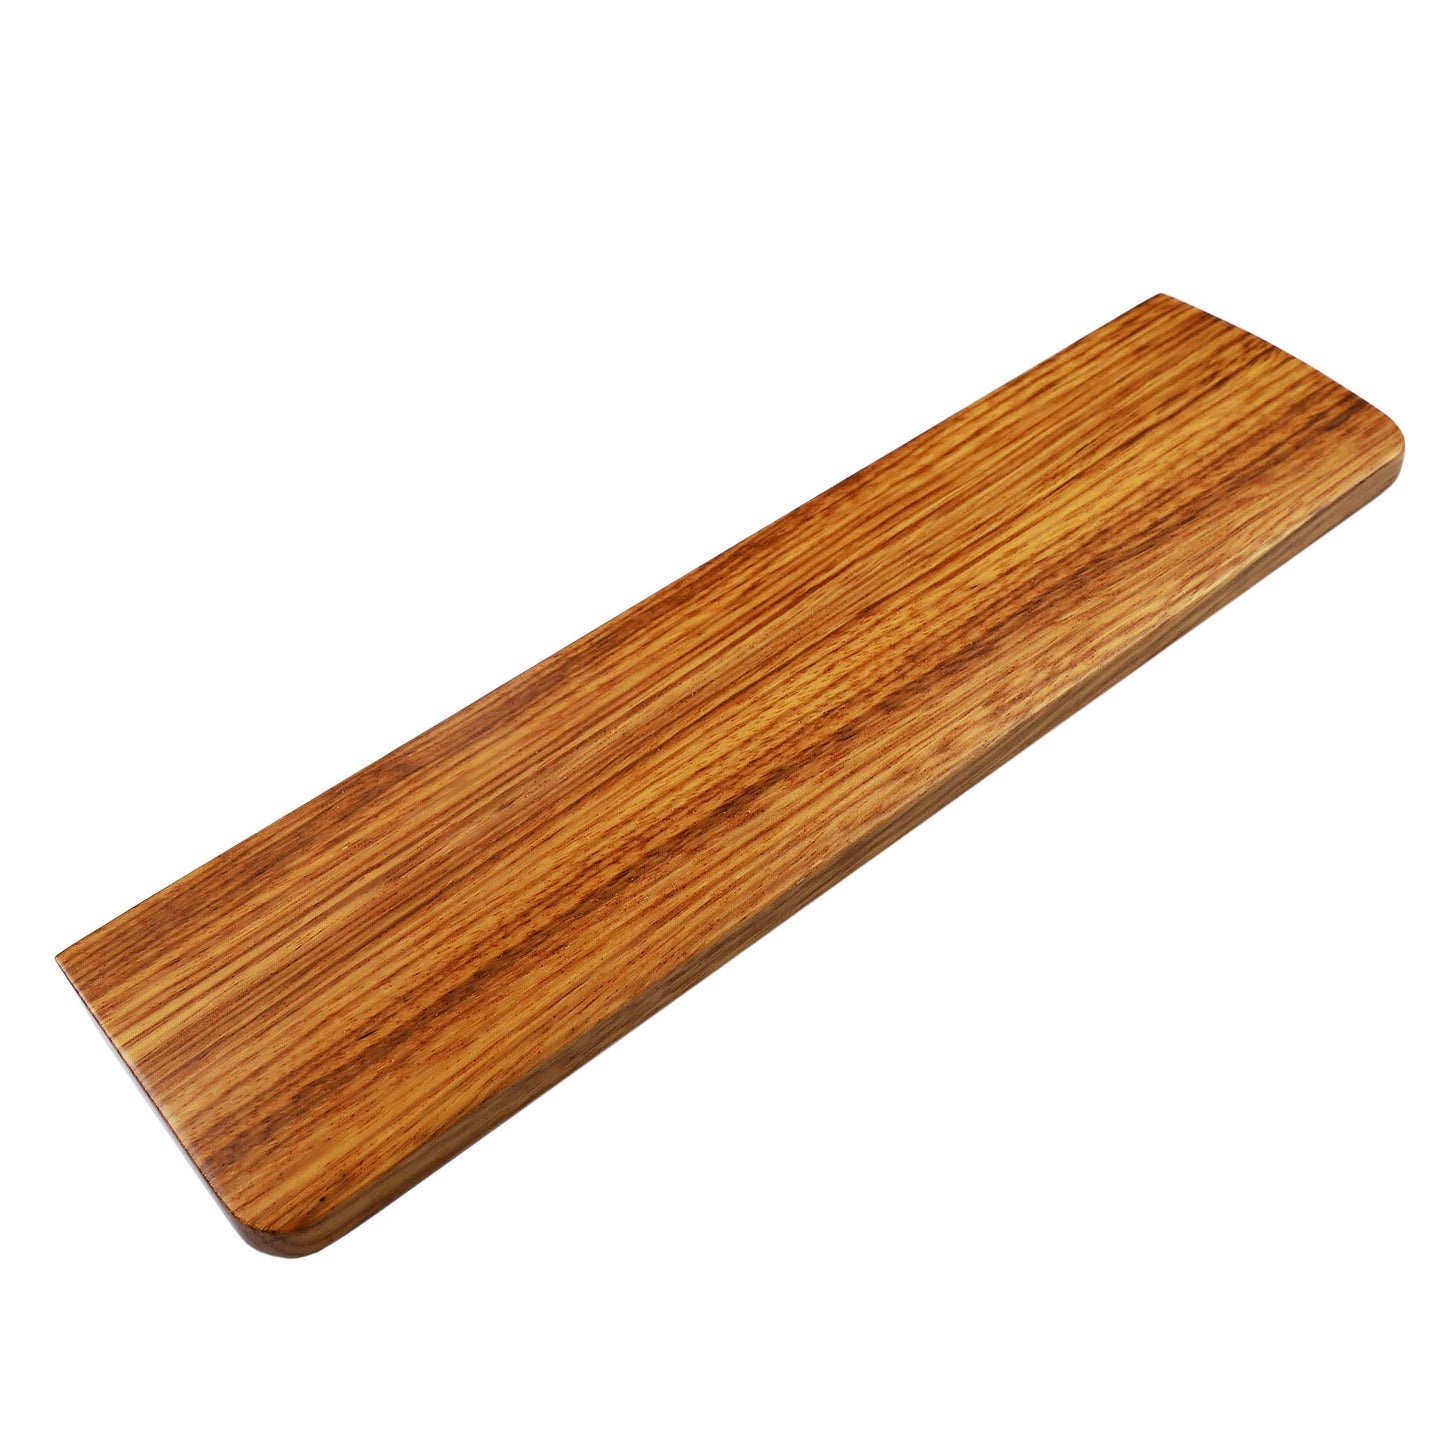 YMD-60% Wood Wrist(GH60 GK61 GK64 ID75 Using)